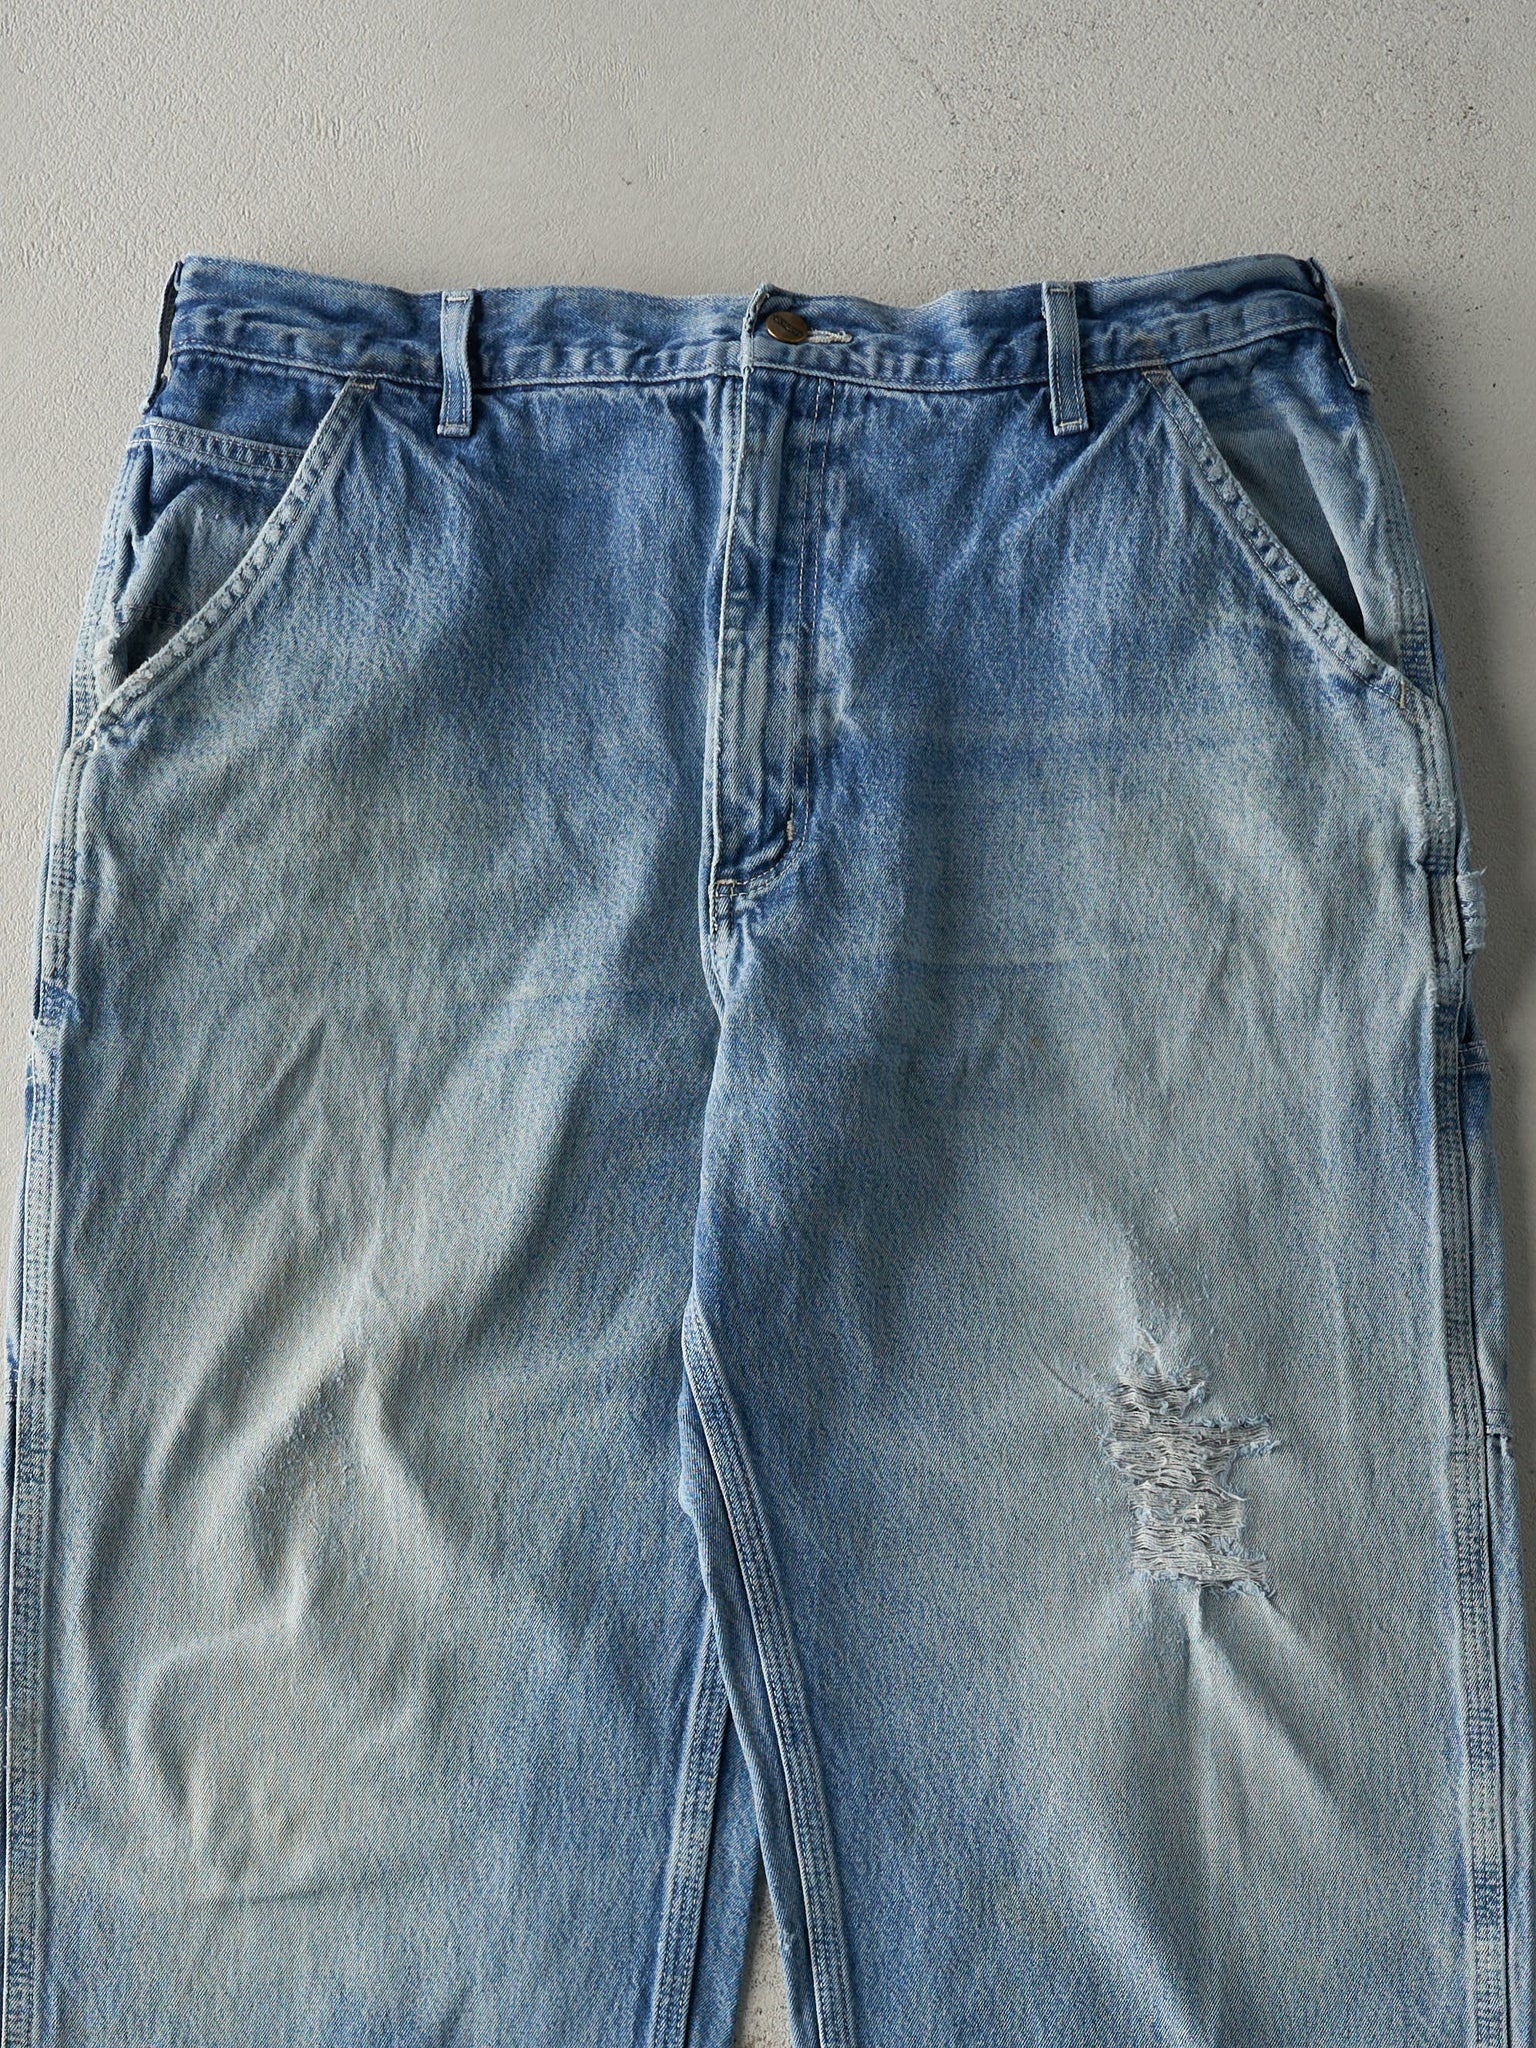 Vintage Y2K Light Wash Dungaree Fit Carhartt Carpenter Jeans (38x32.5)